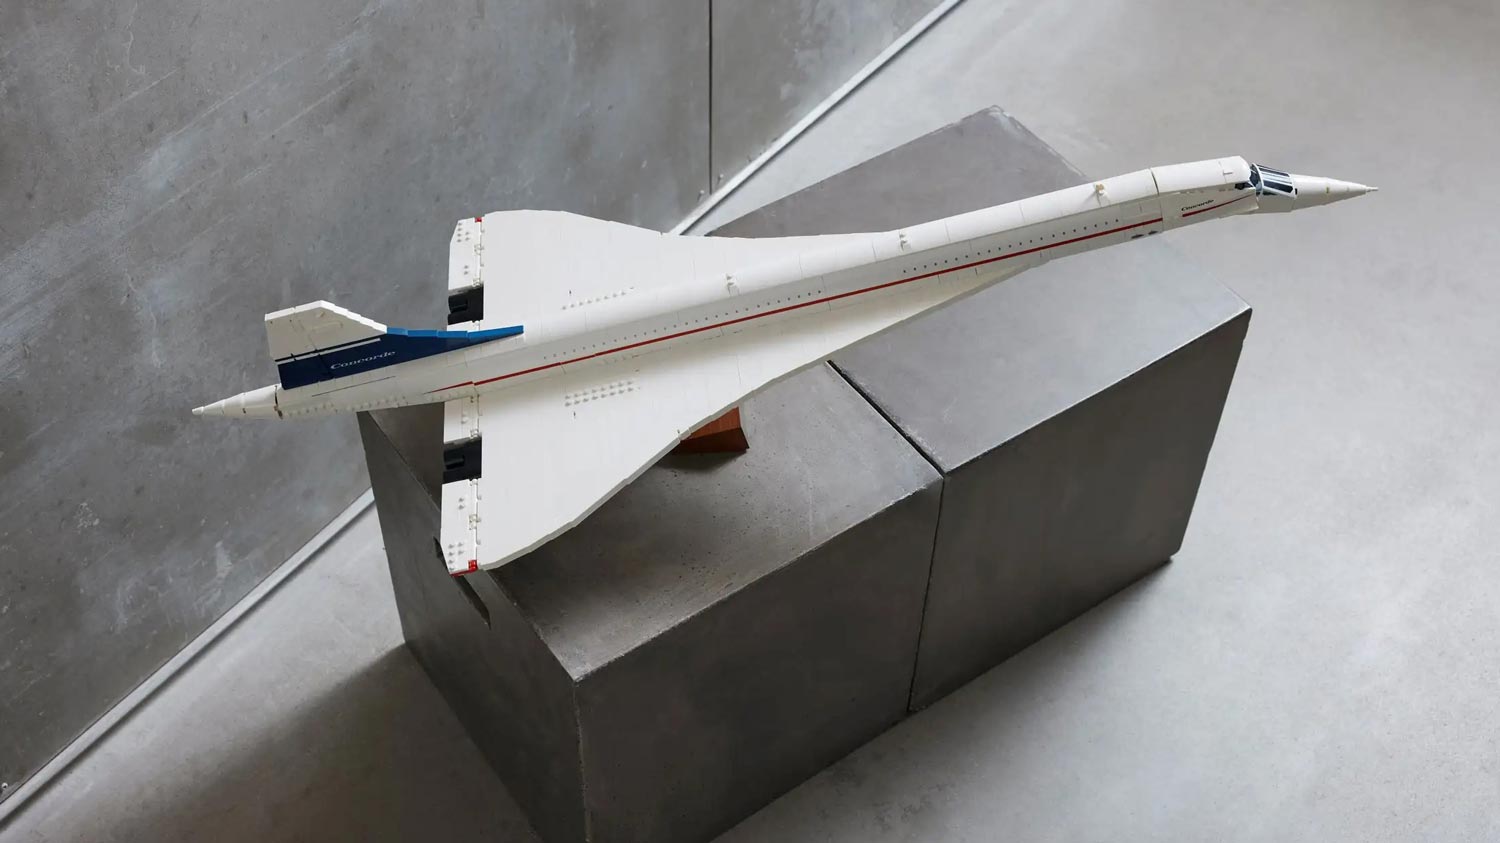 Pesawat Supersonik Concorde Diabadikan Sebagai Set Lego